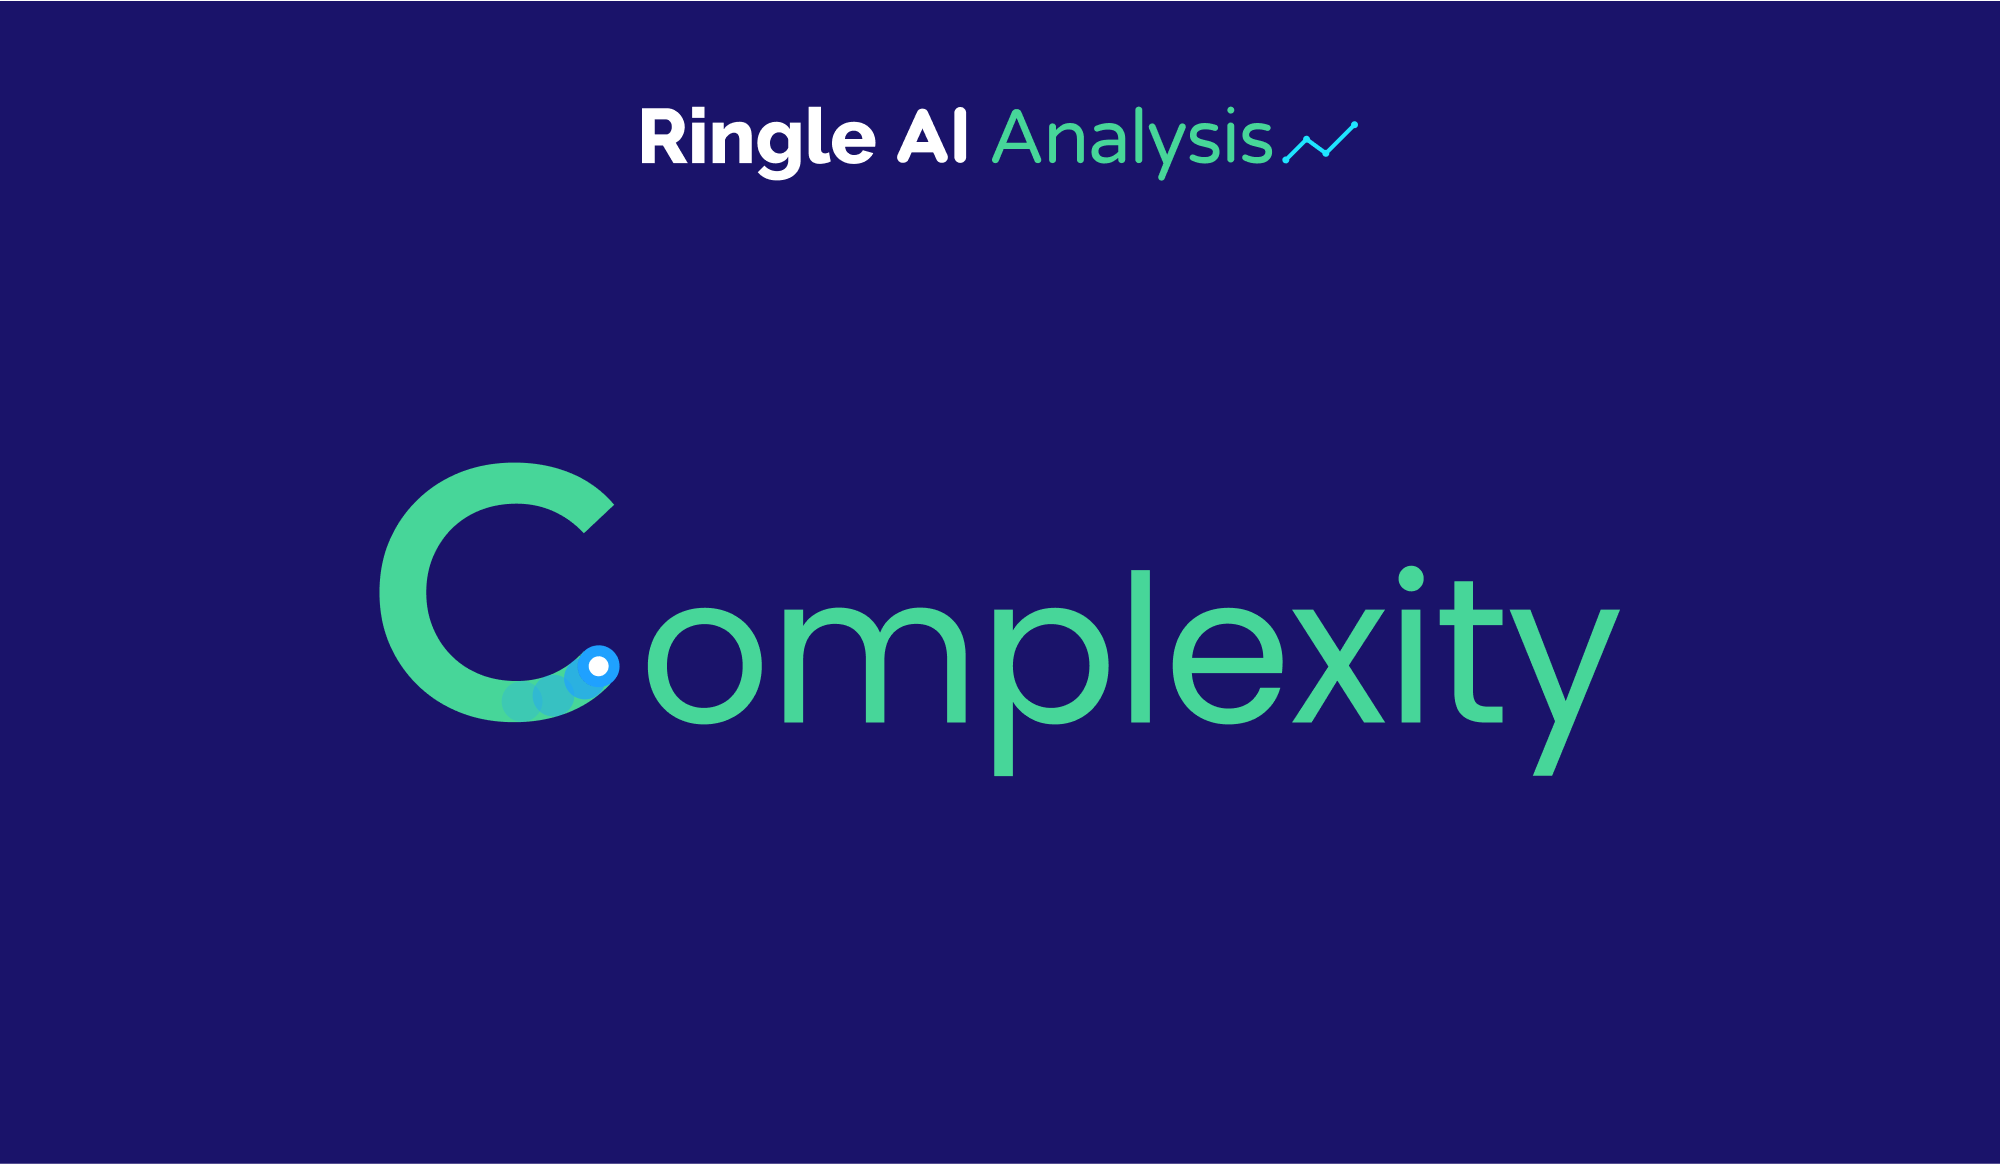  Compexity를 향상시키는 링글 CAF 서비스를 소개하는 주황색 타이포.